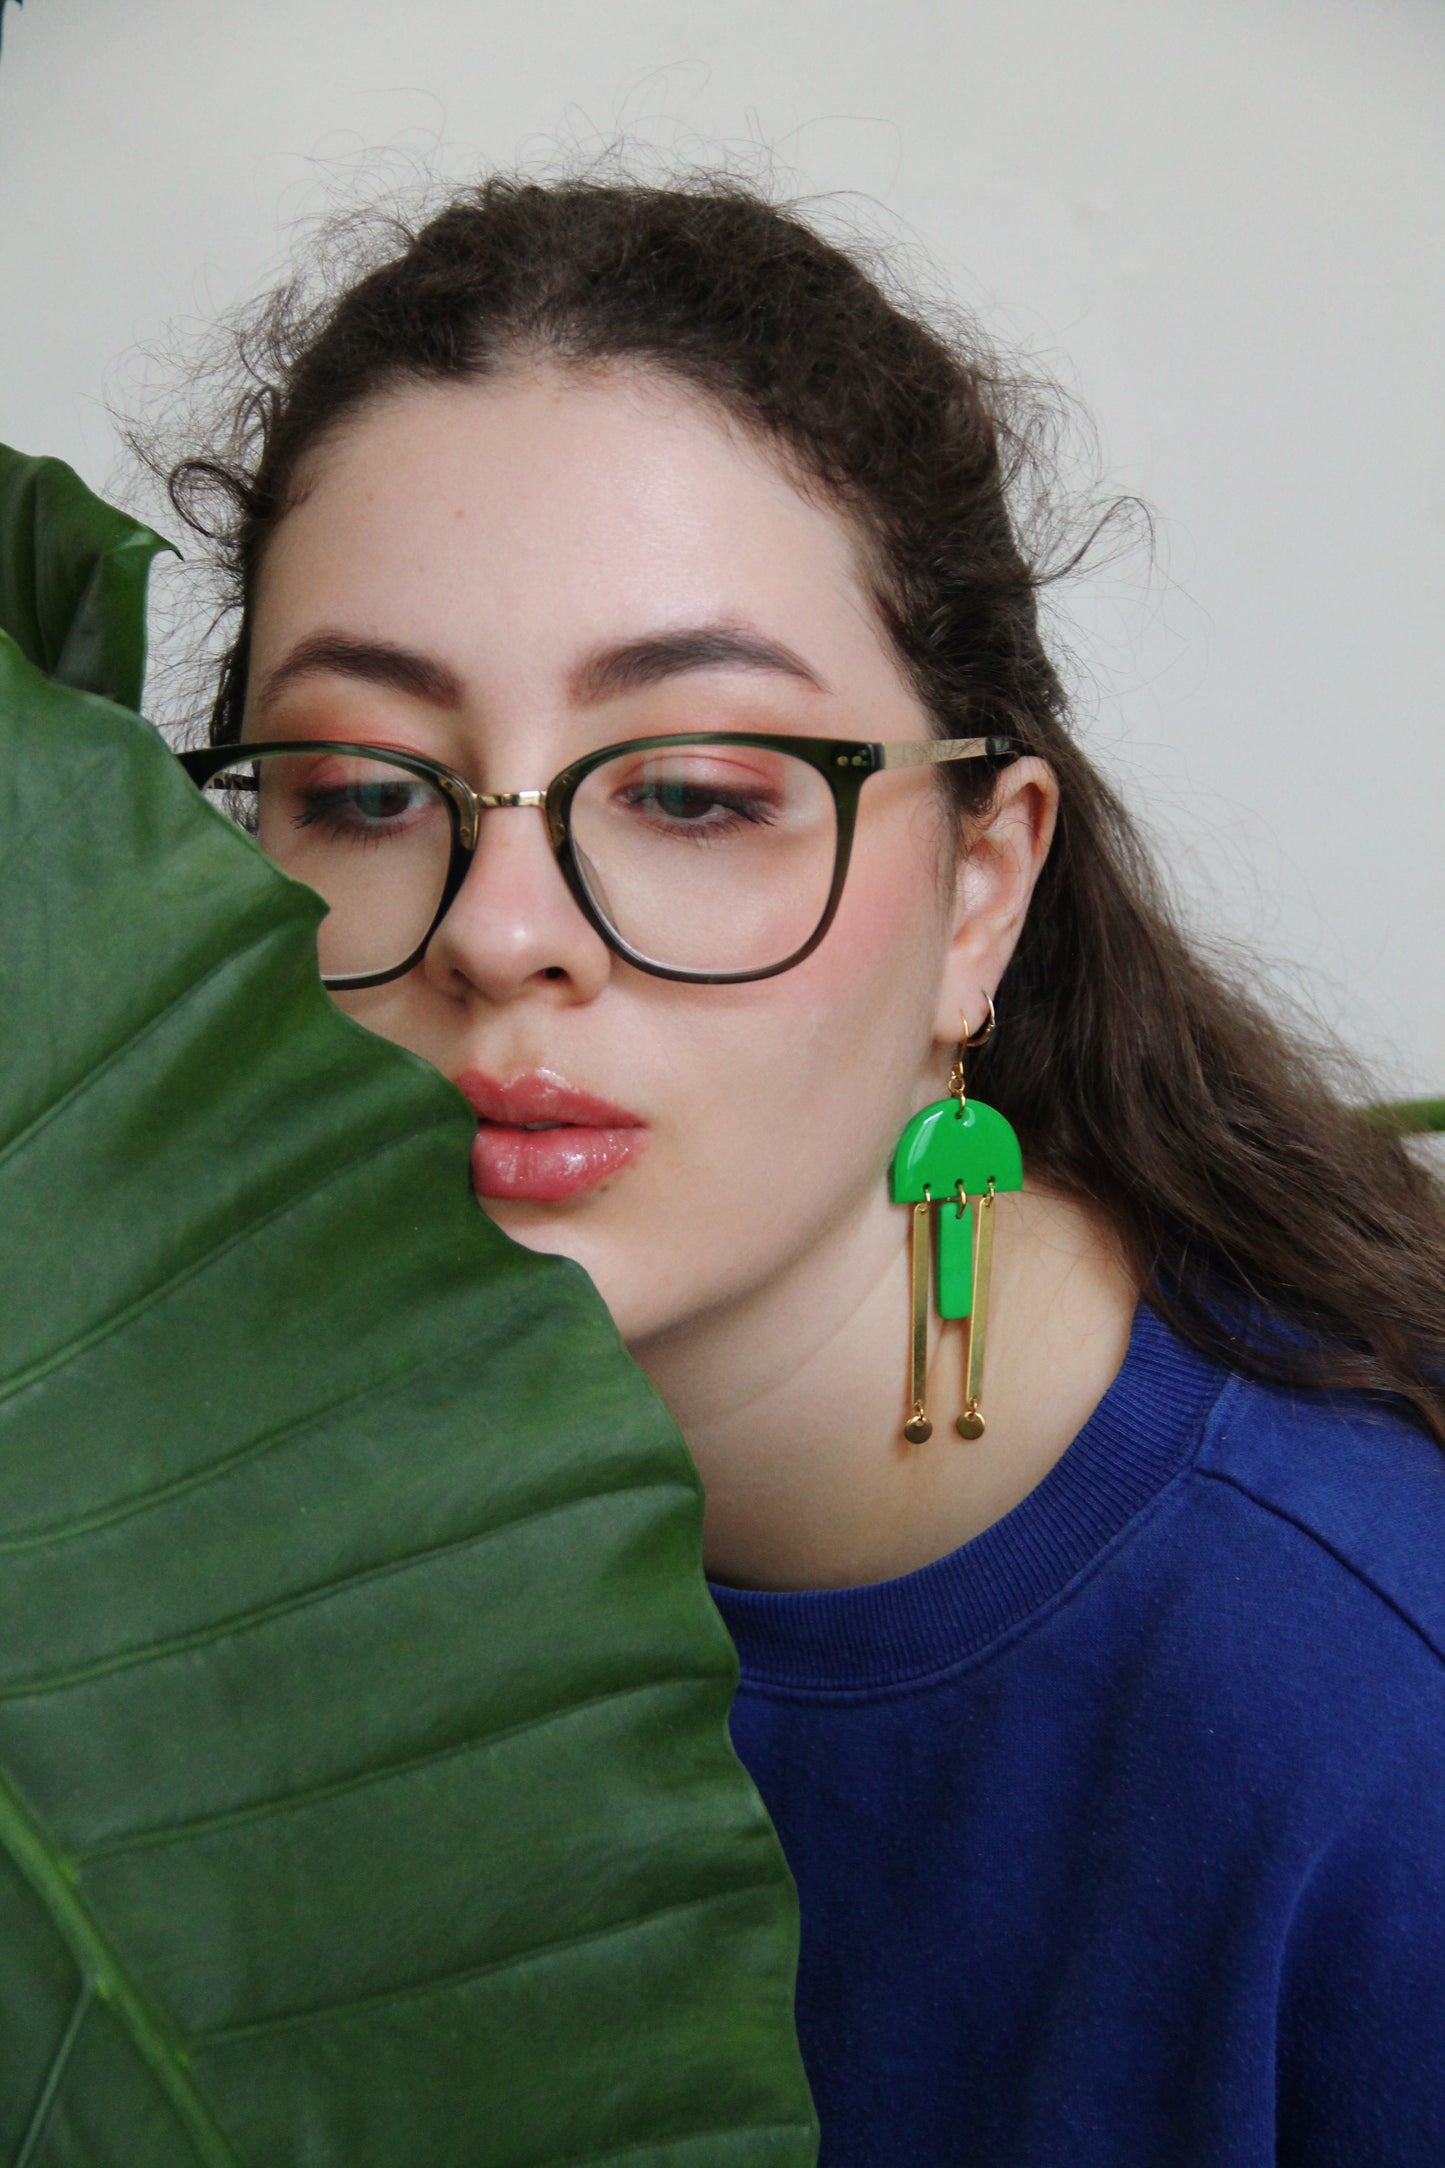 STELLAR earrings 2.0 - Green